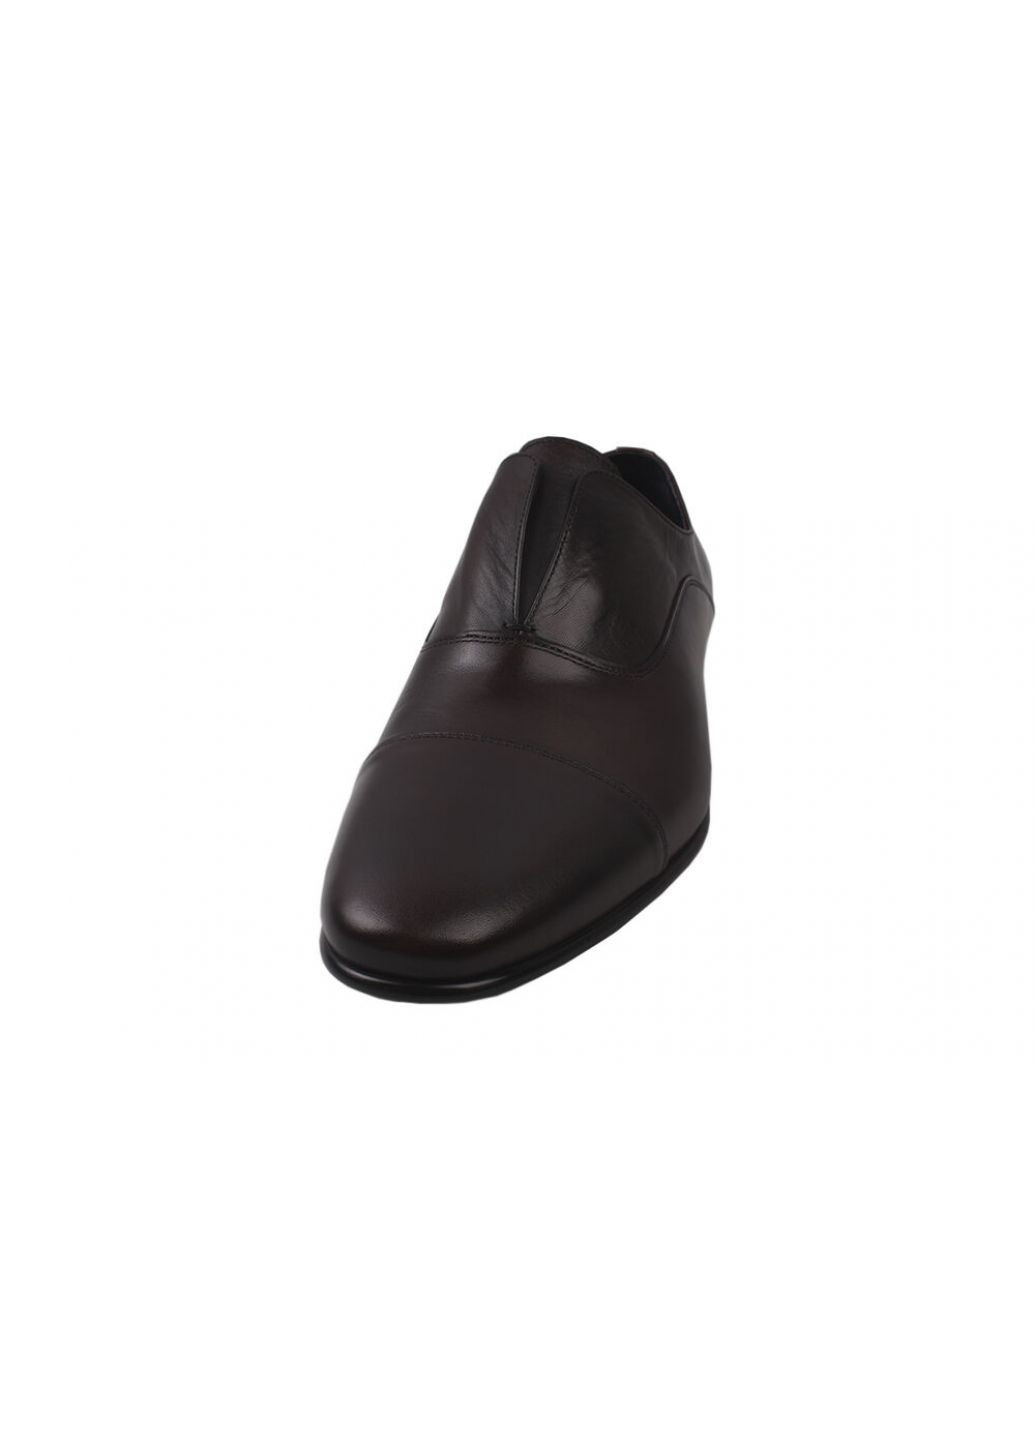 Бордовые туфли класика мужские натуральная кожа, цвет бордо Antoni Bianchi